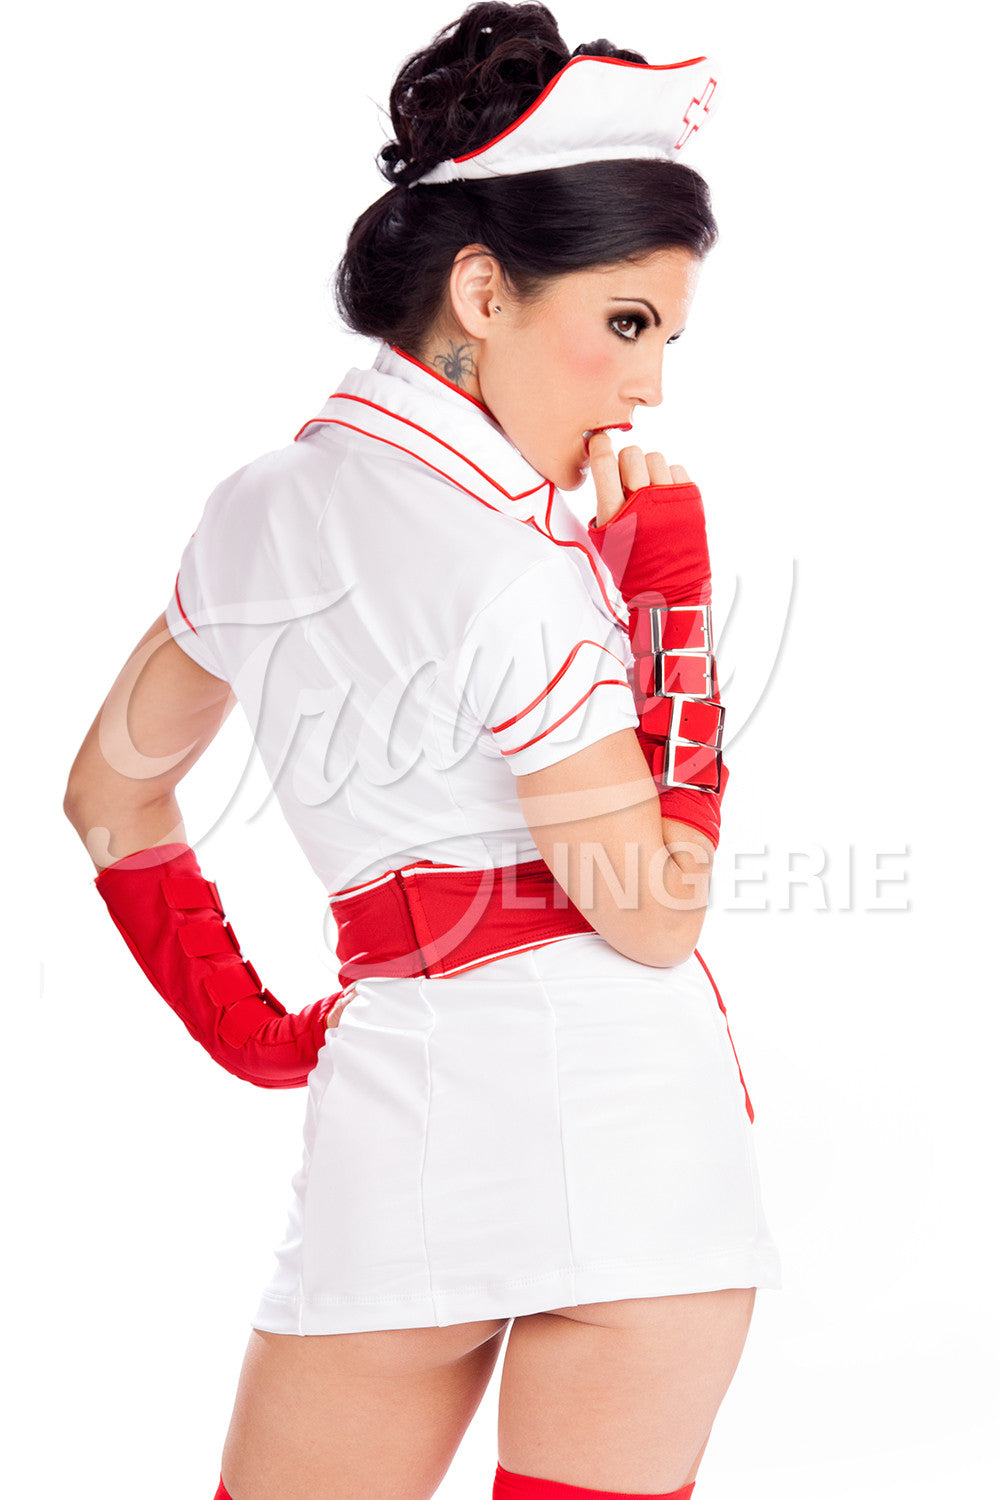 Buckle Nurse Dress